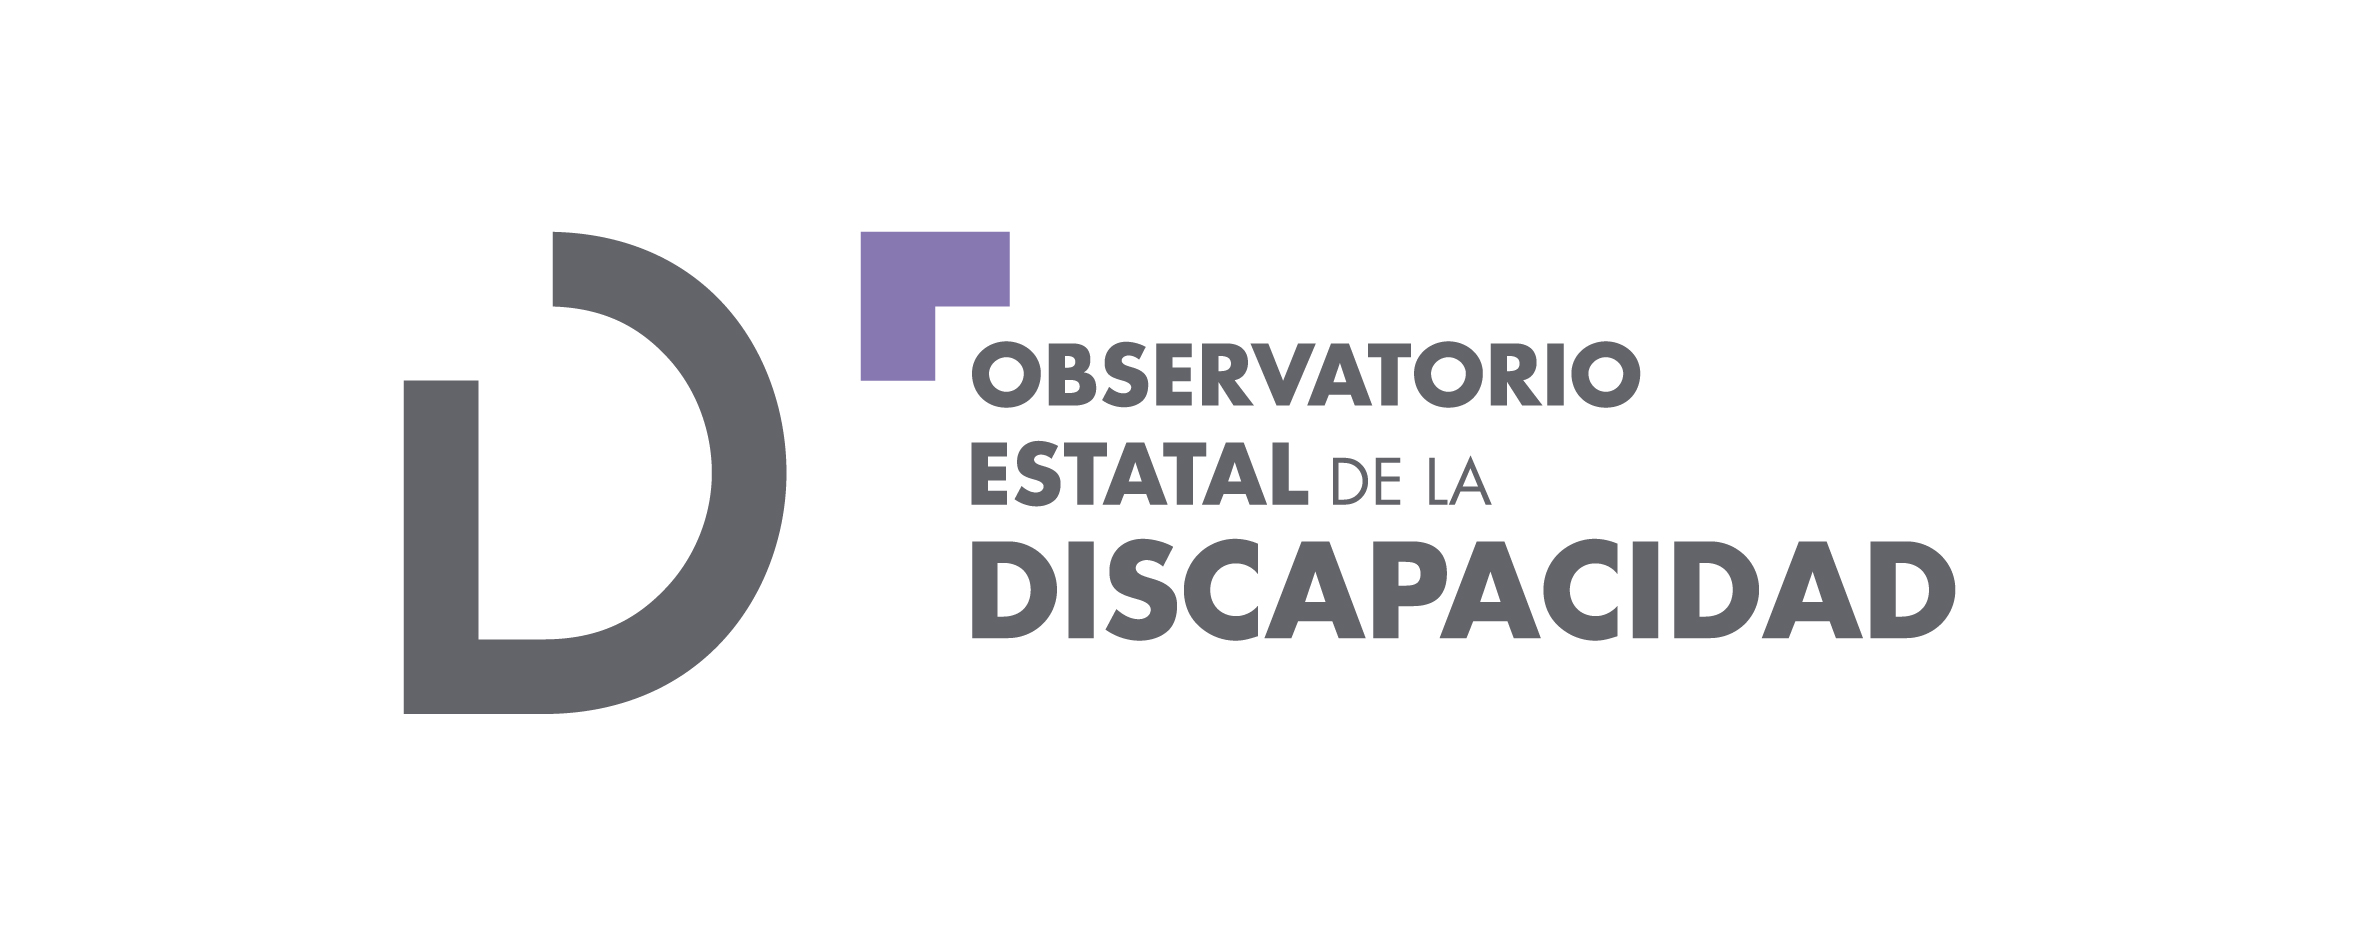 idea anfitriona Prisionero Informe Olivenza 2019, sobre la situación general de la discapacidad en  España – Observatorio Estatal de la Discapacidad